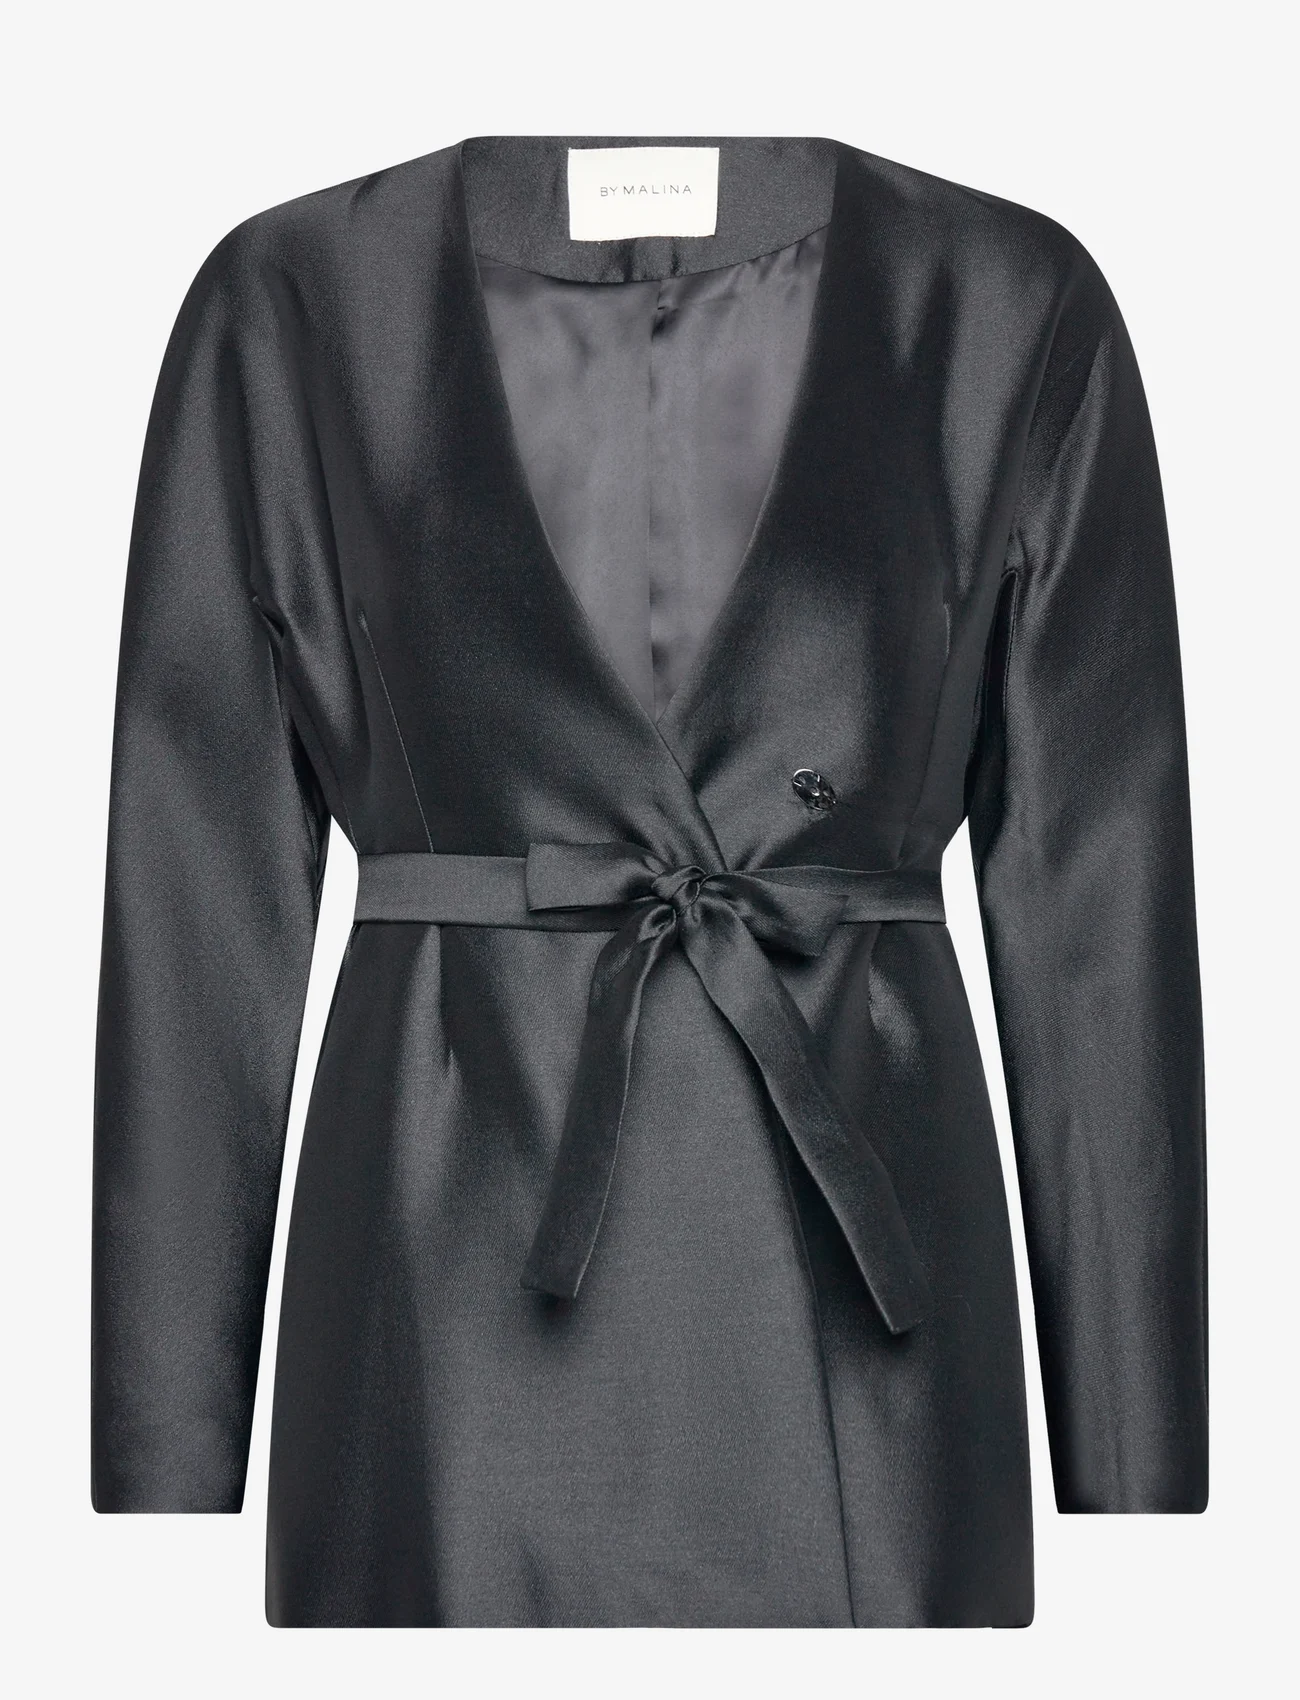 Malina - Clara silk blend collarless blazer - festmode zu outlet-preisen - black - 0